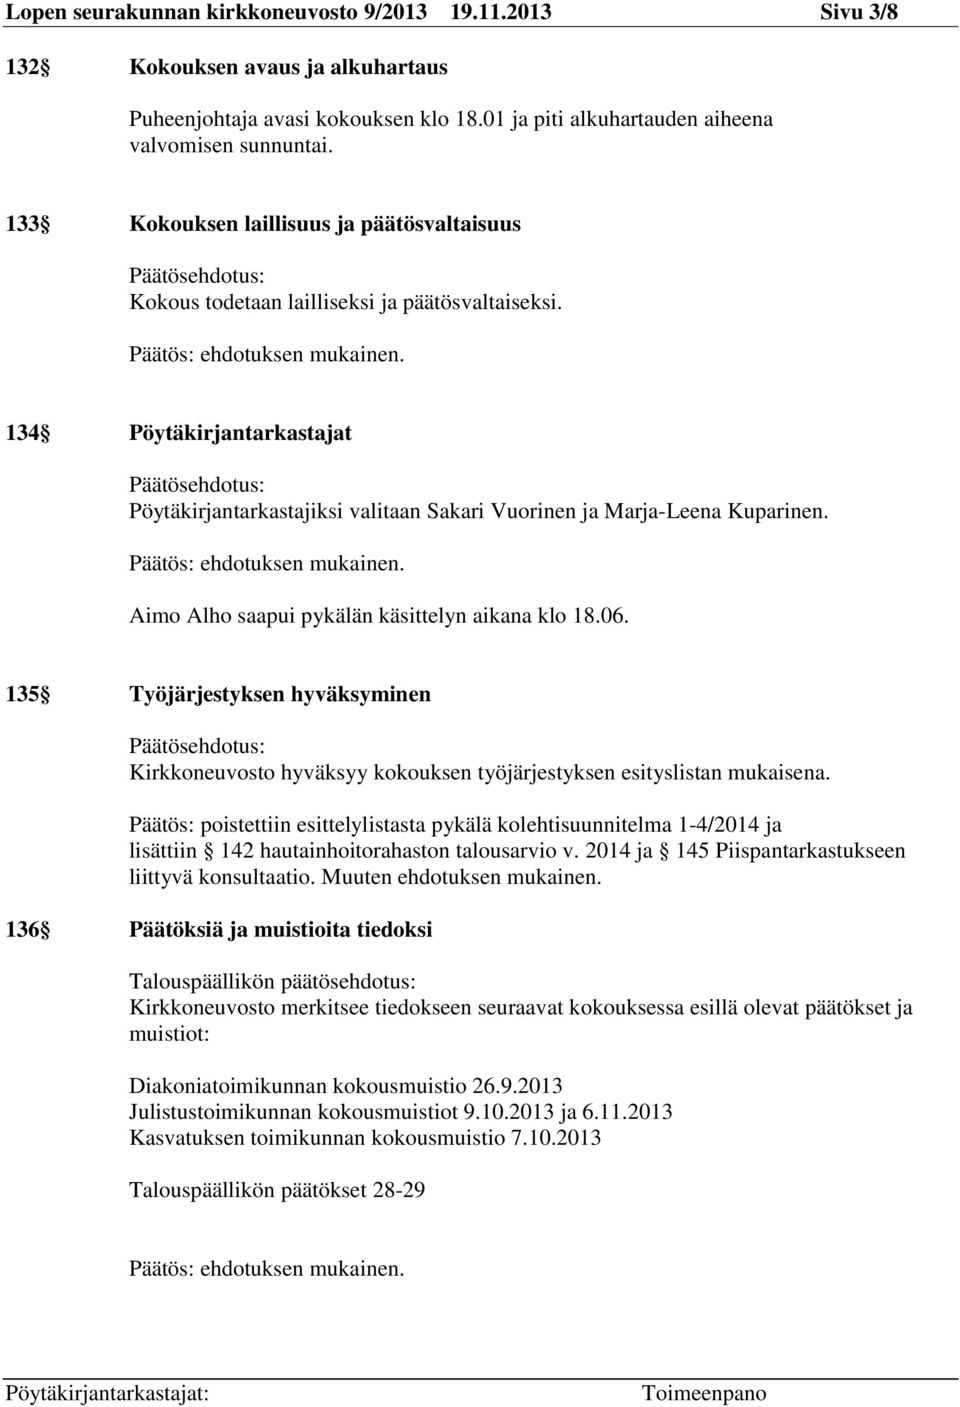 134 Pöytäkirjantarkastajat Päätösehdotus: Pöytäkirjantarkastajiksi valitaan Sakari Vuorinen ja Marja-Leena Kuparinen. Aimo Alho saapui pykälän käsittelyn aikana klo 18.06.